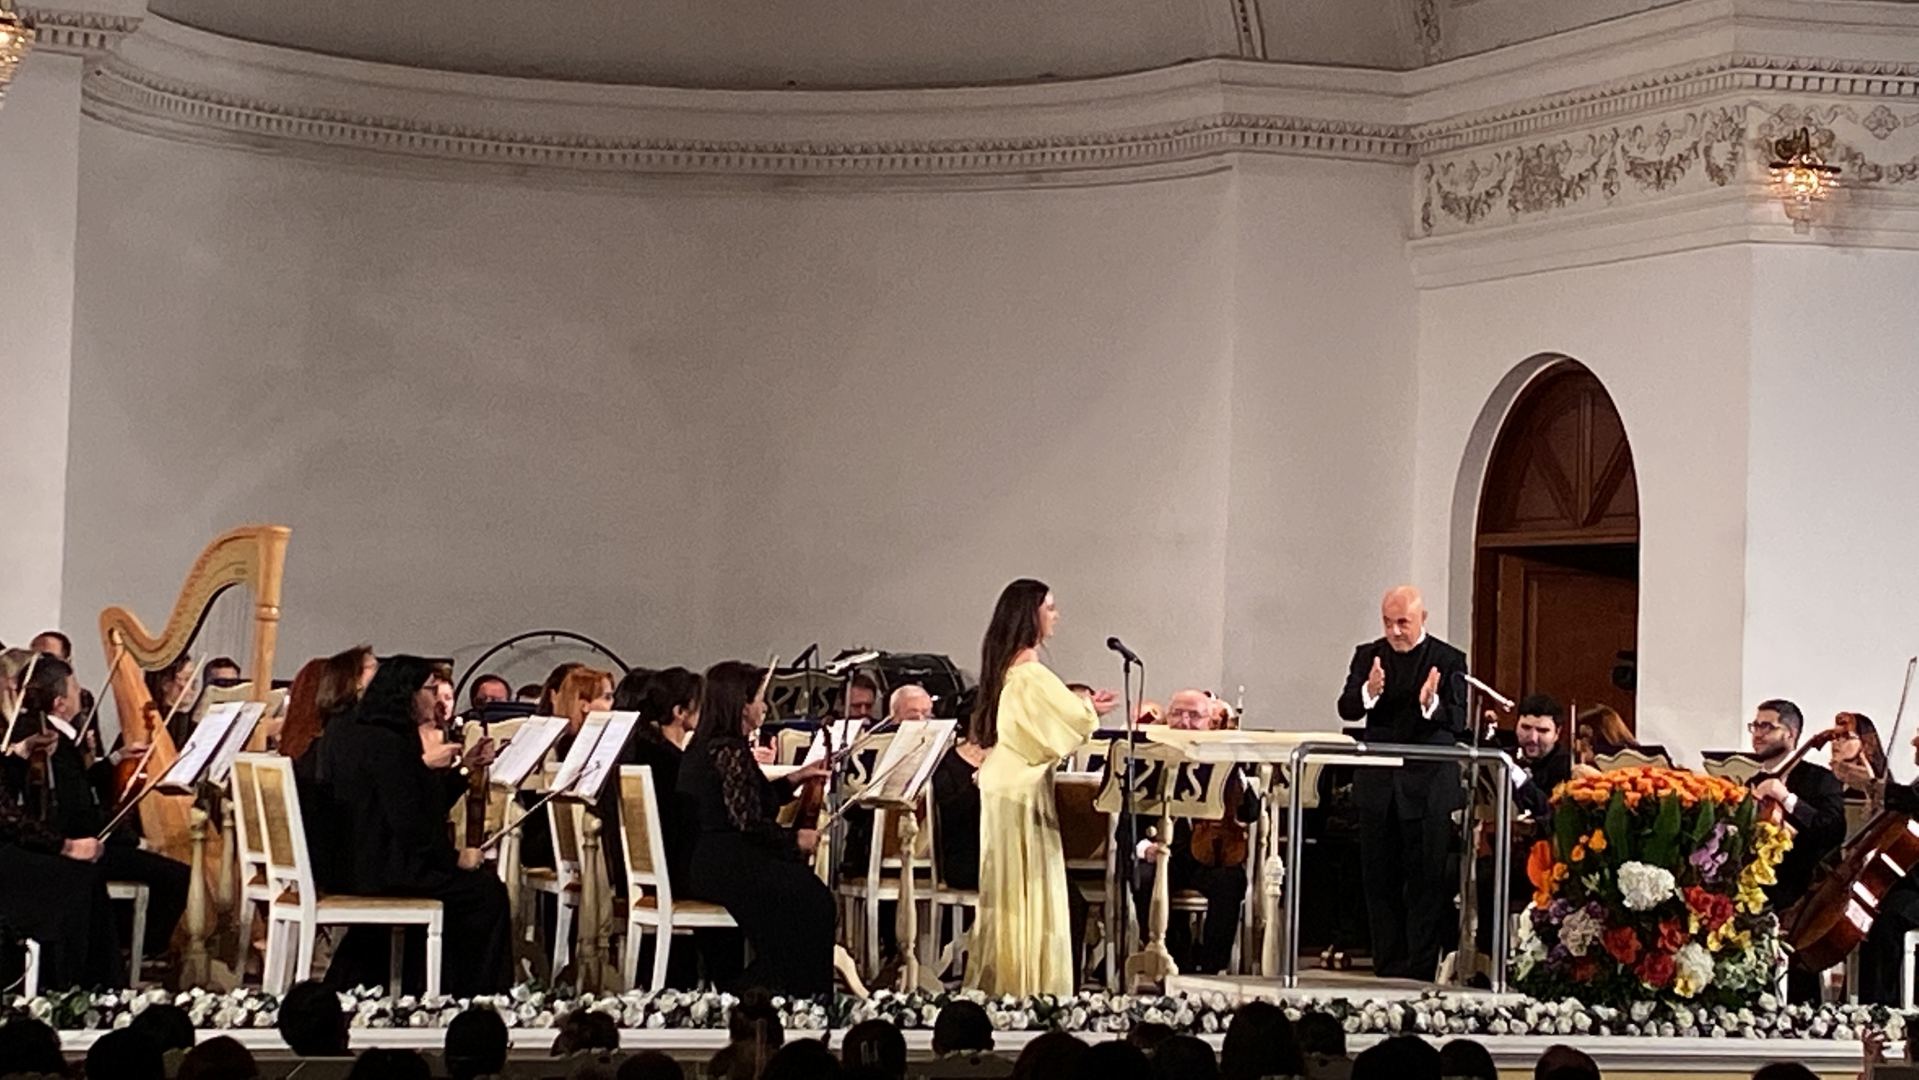 Красота и мелодичность в Баку – концерт симфонического оркестра под управлением Ялчина Адигезалова (ФОТО/ВИДЕО)